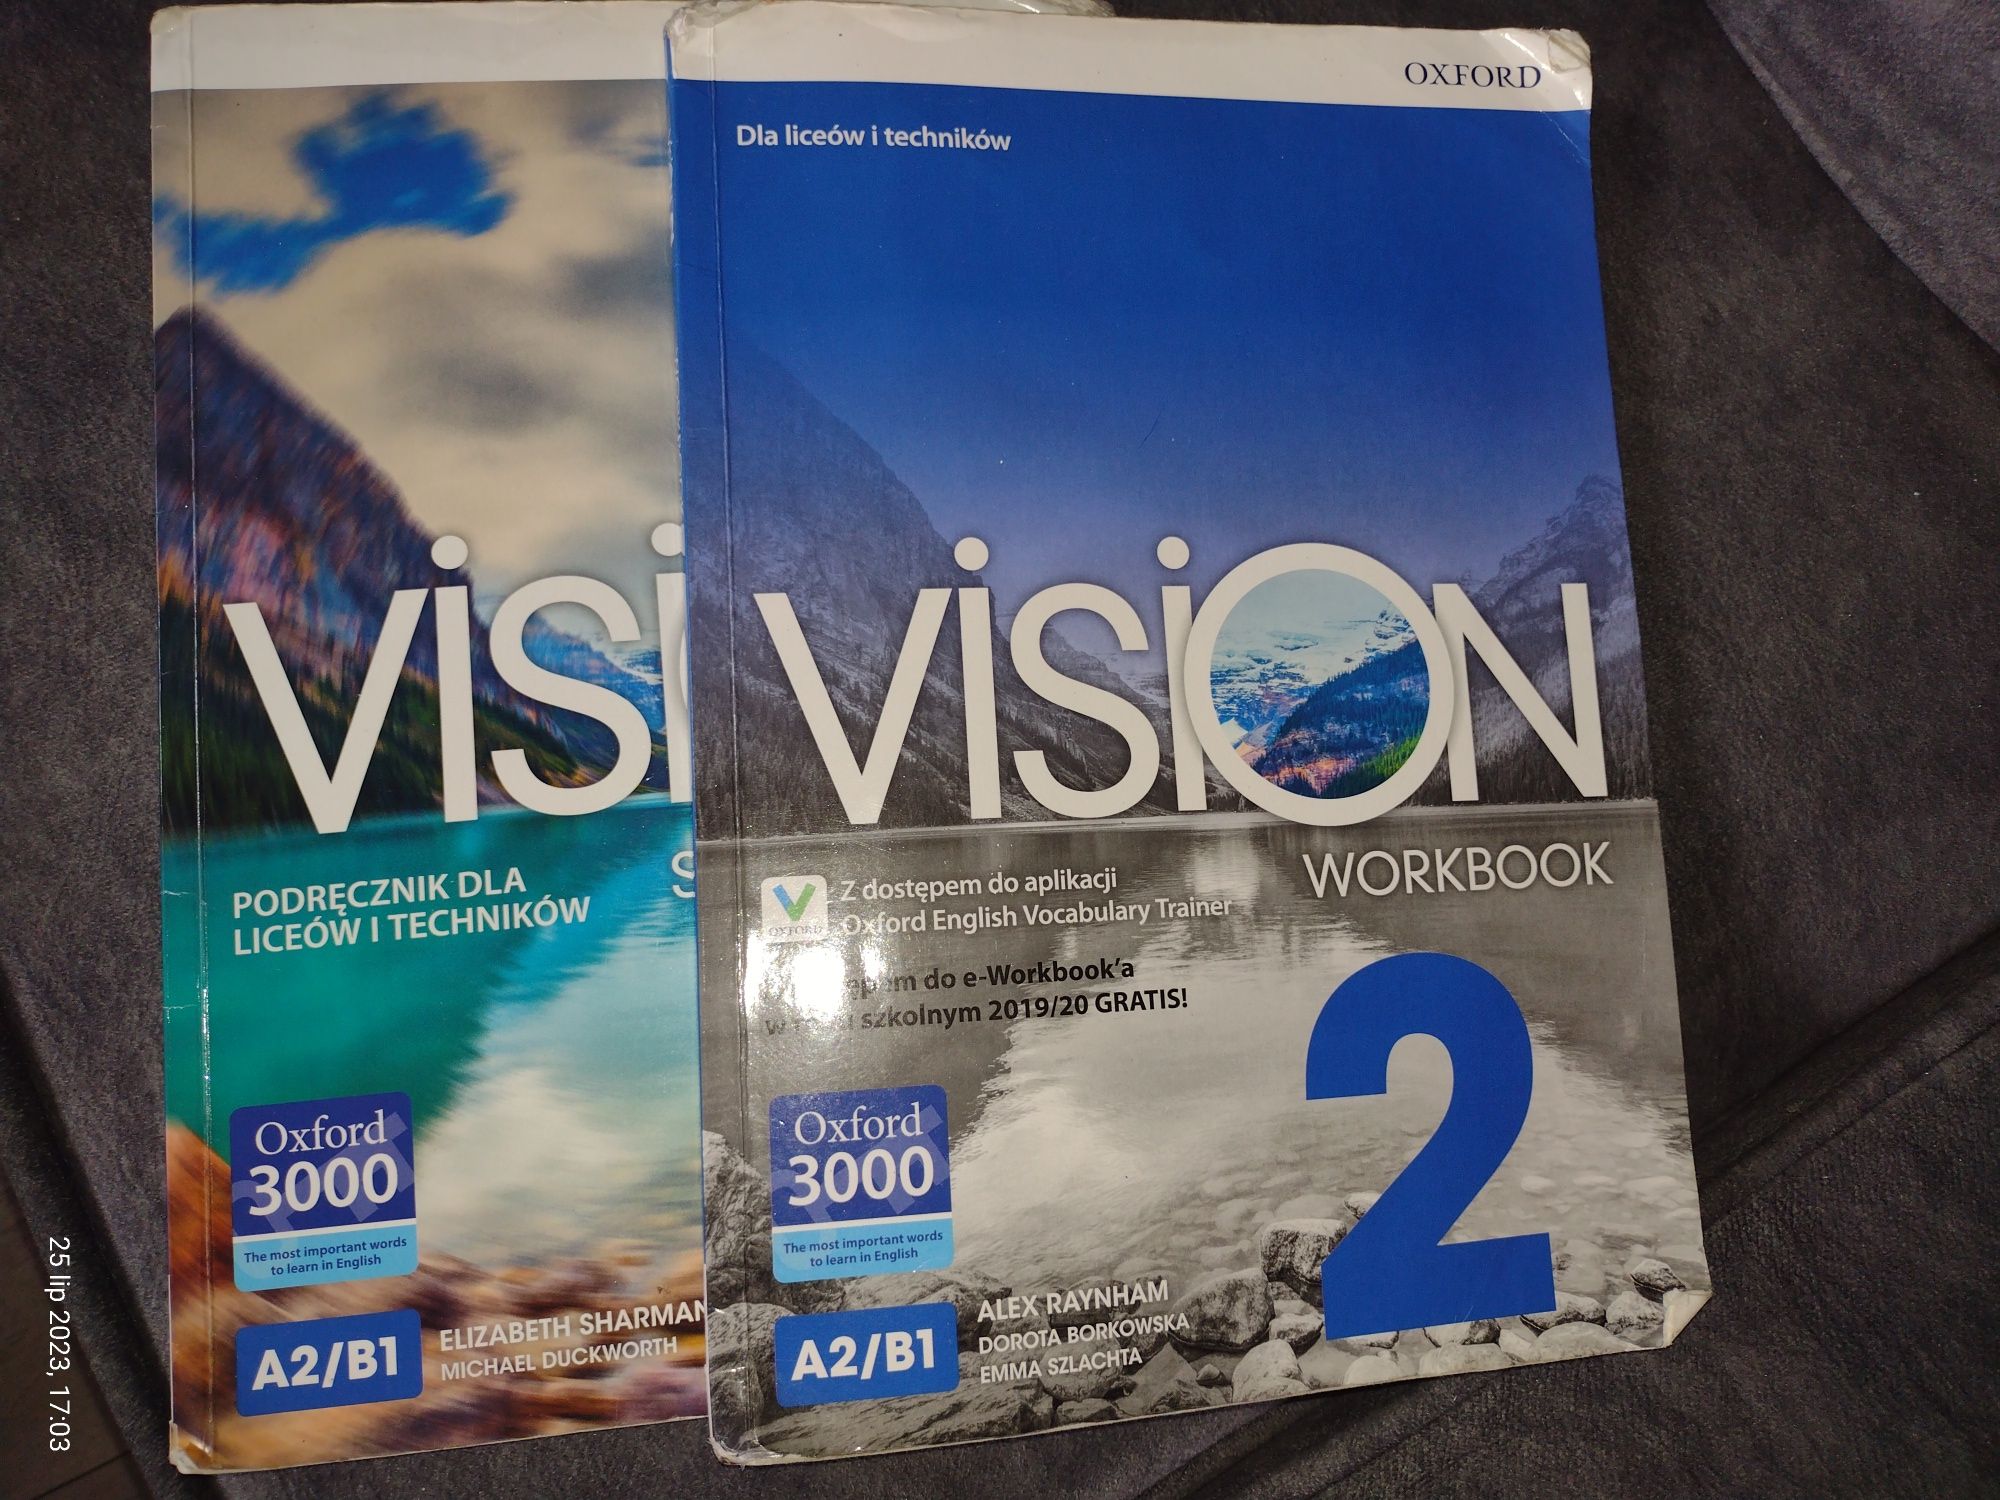 Vision 2 Podręcznik i ćwiczenie do języka angielskiego